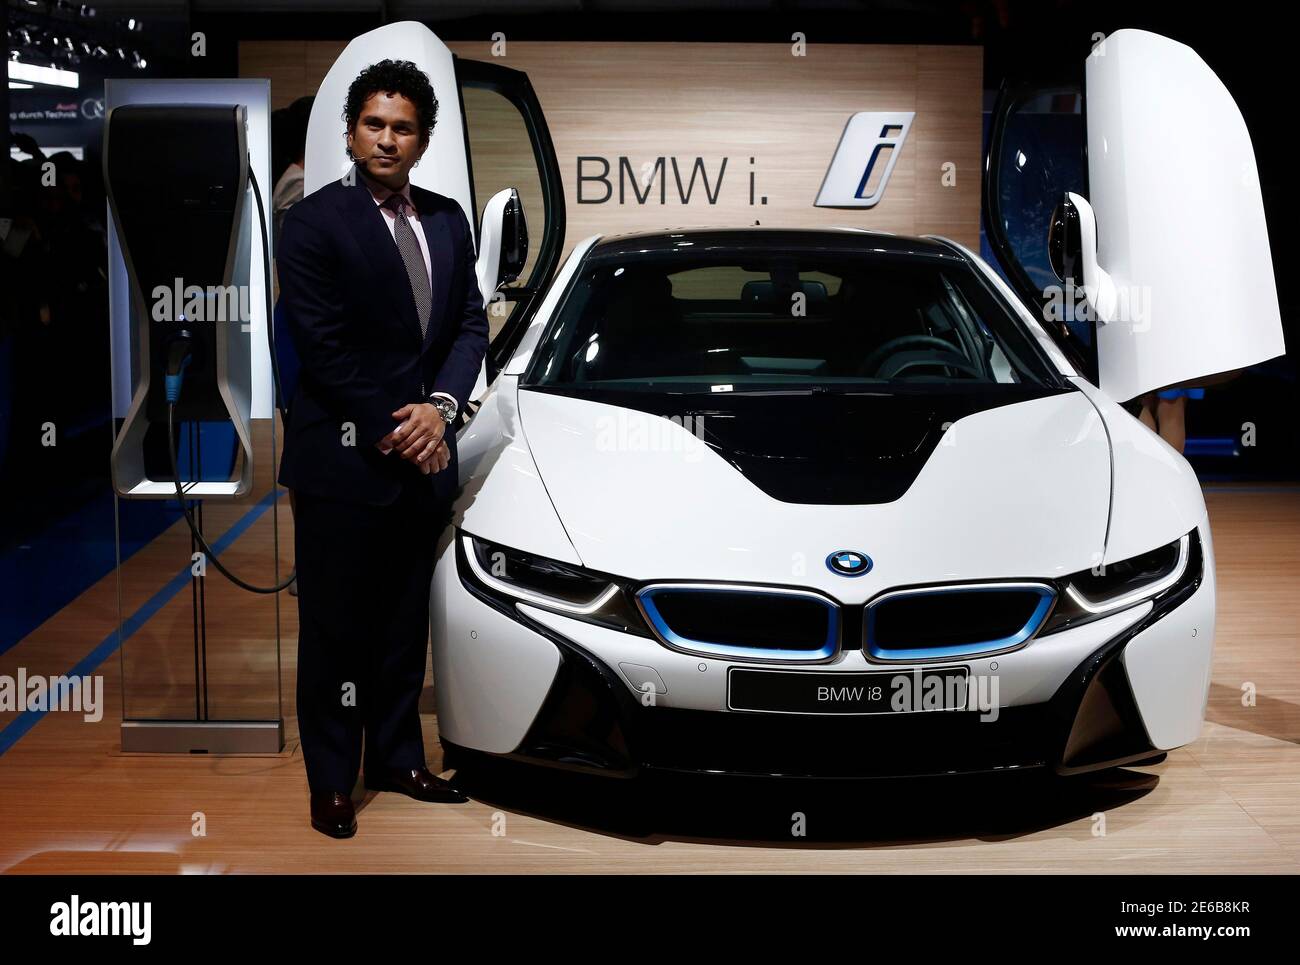 Ehemaliger Cricketspieler Sachin Tendulkar posiert mit Hybrid-Auto von BMW i8 während des Starts auf der indischen Auto Expo in Greater Noida, am Stadtrand von Neu-Delhi, 5. Februar 2014. REUTERS/Adnan Abidi (Indien - Tags: TRANSPORT BUSINESS SPORT CRICKET) Stockfoto